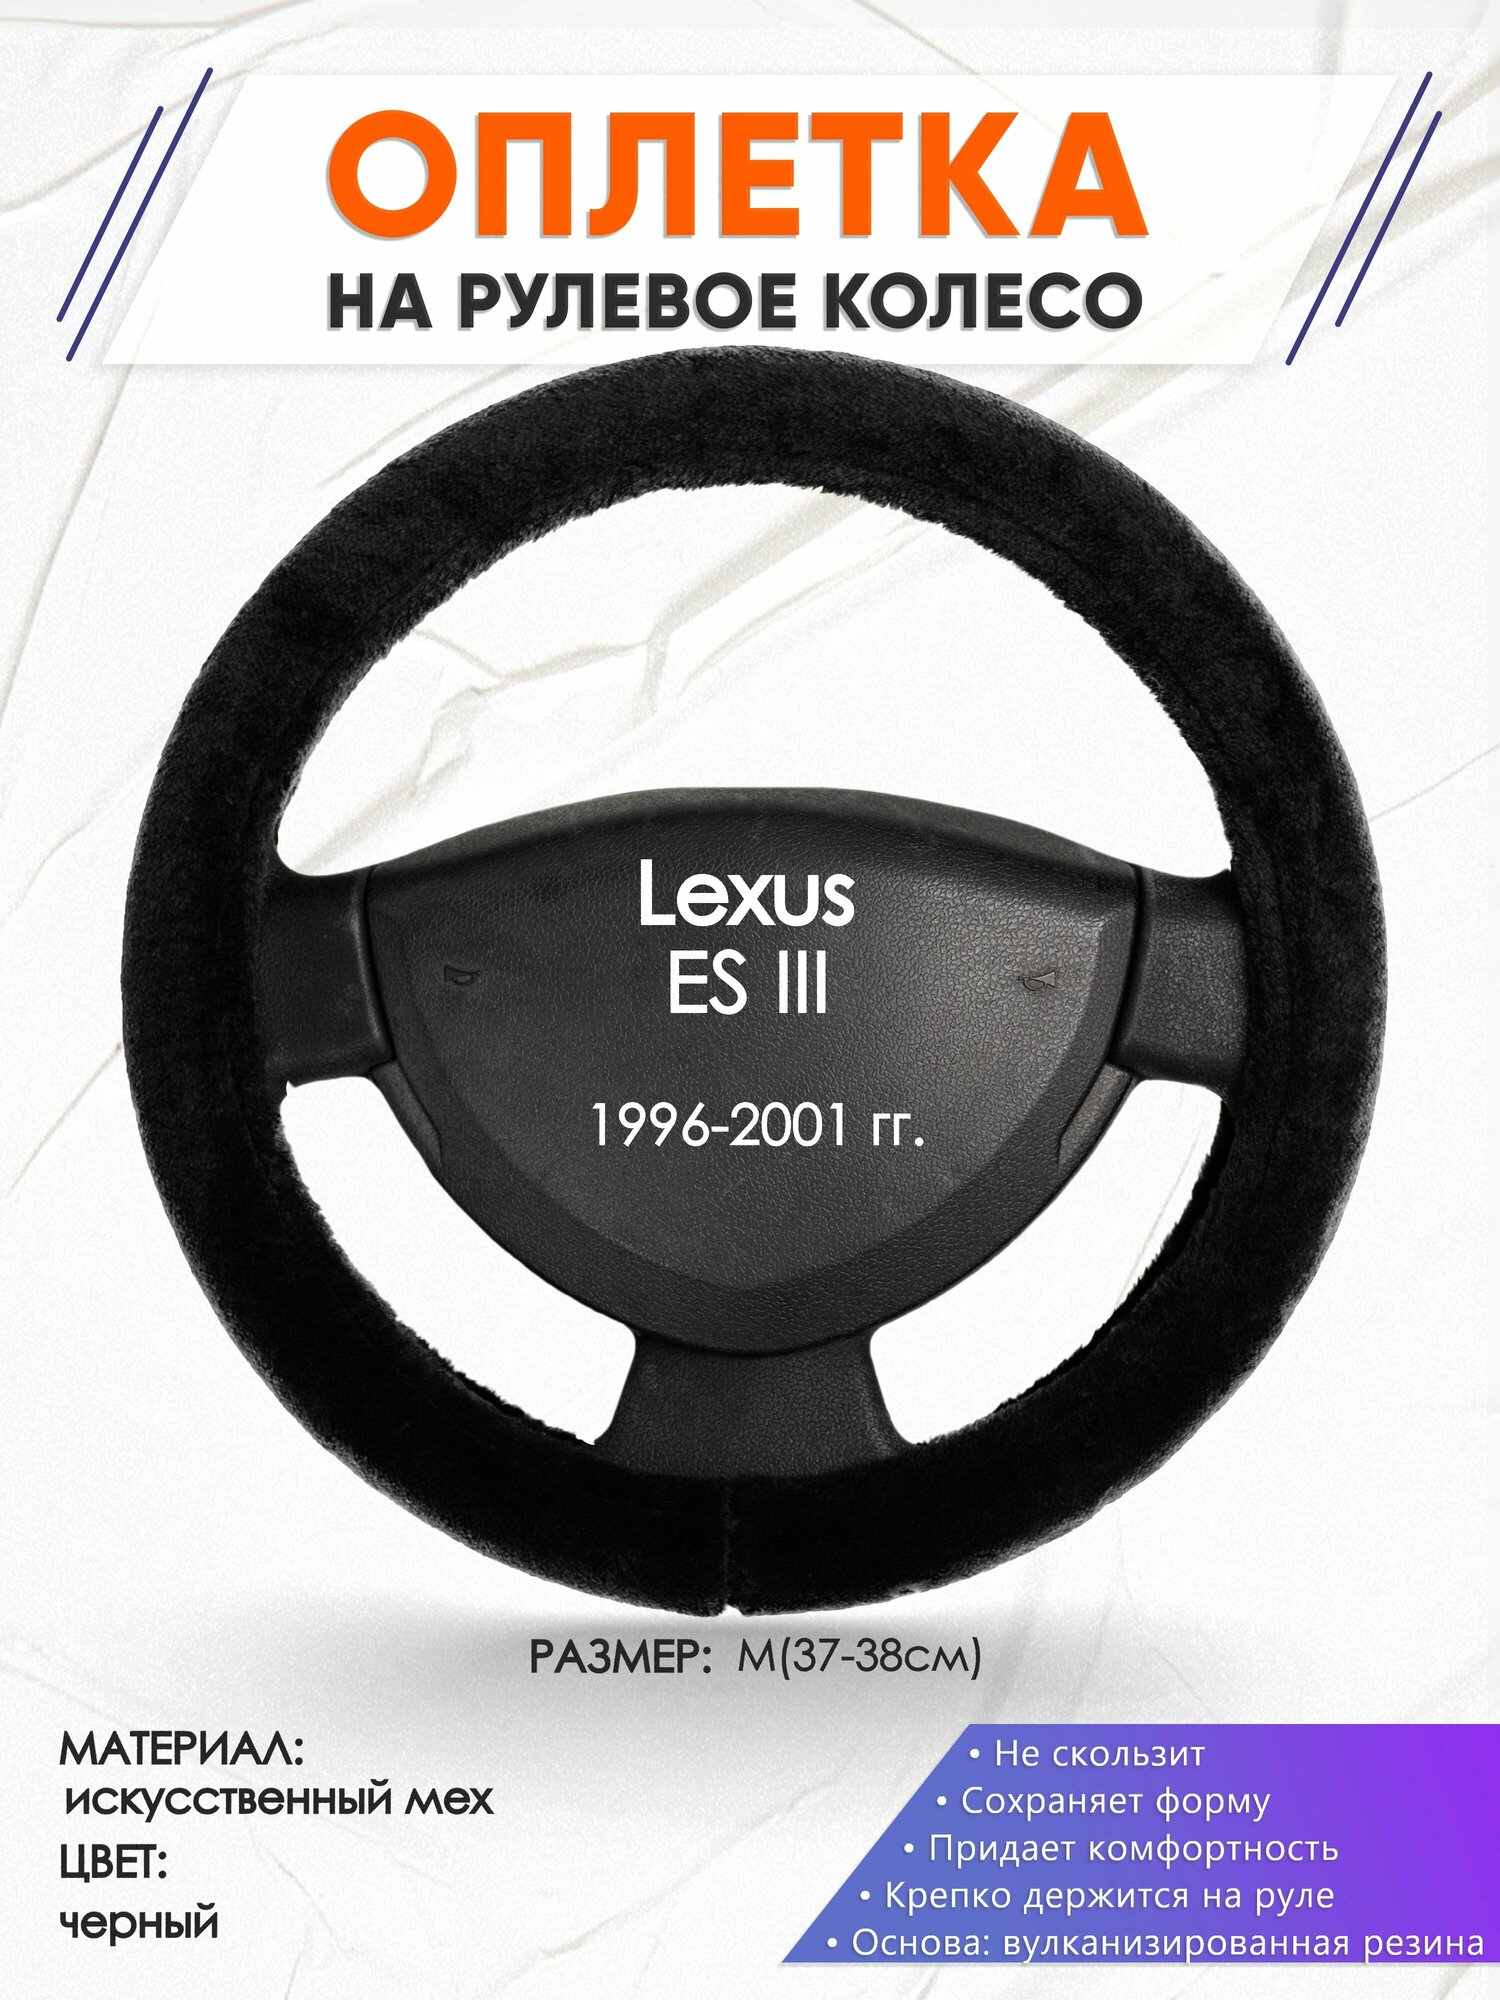 Оплетка наруль для Lexus ES 3(Лексус ЕС 3) 1996-2001 годов выпуска, размер M(37-38см), Искусственный мех 45